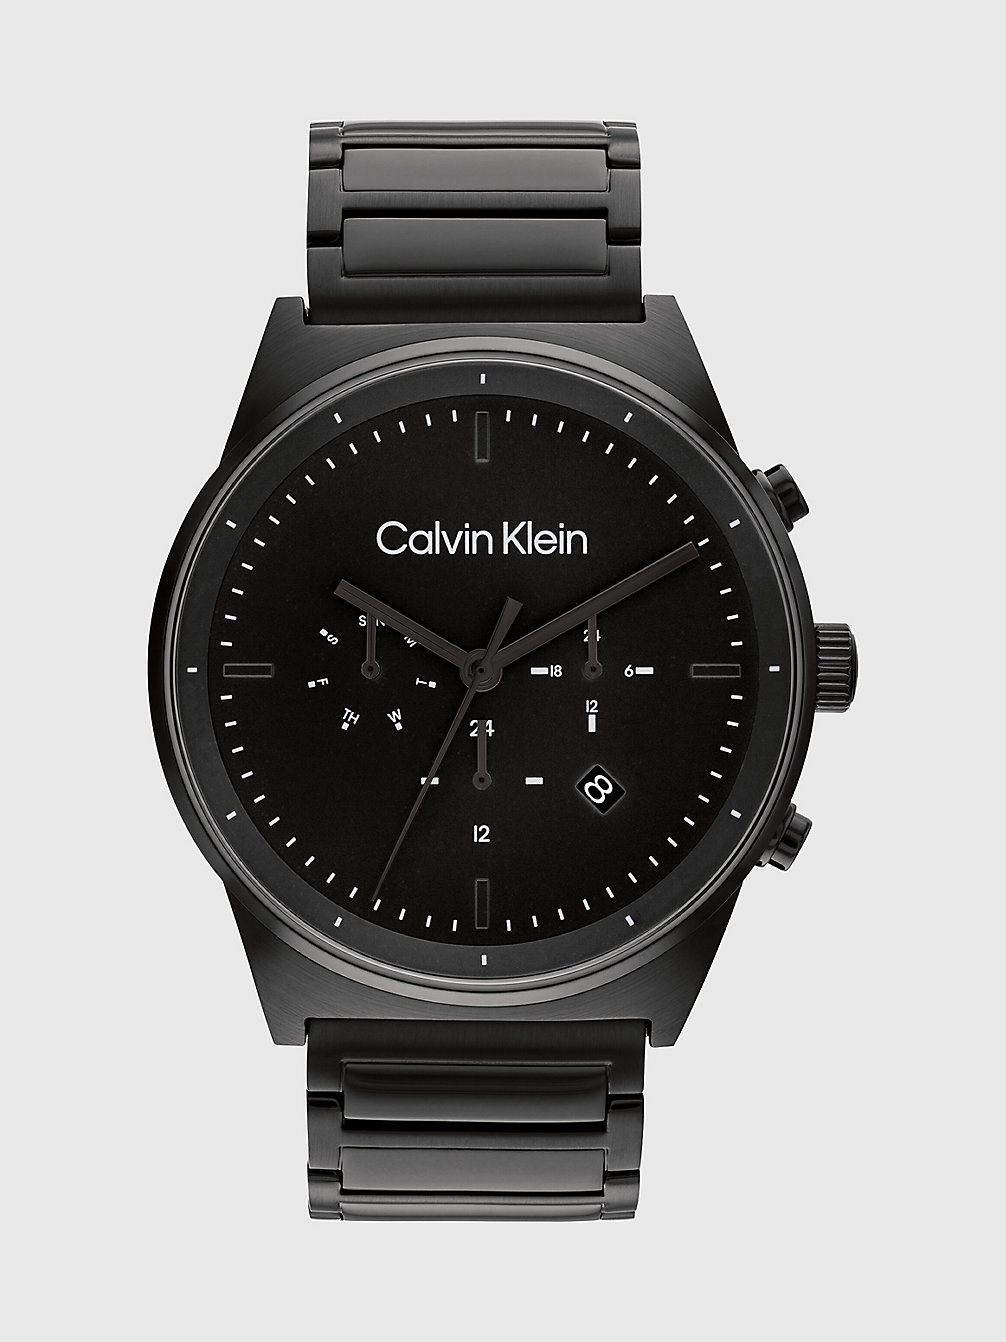 BLACK > Zegarek - CK Impressive > undefined Mężczyźni - Calvin Klein